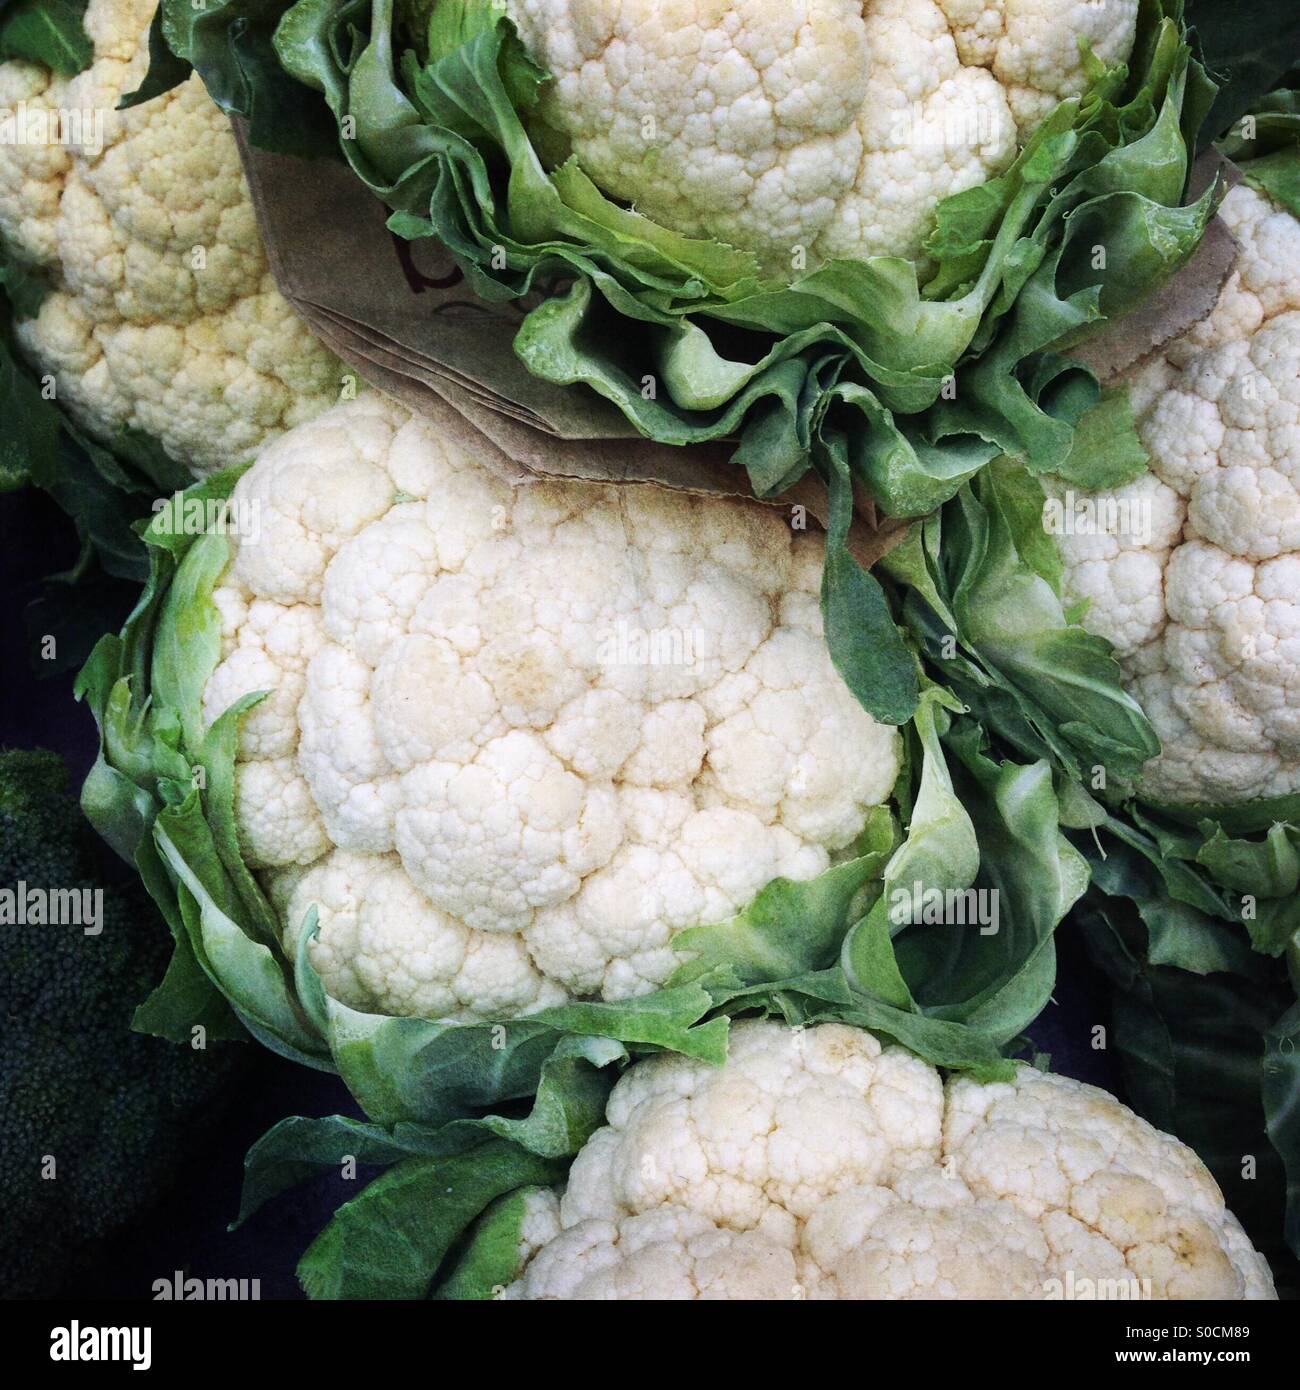 Cauliflowers Stock Photo